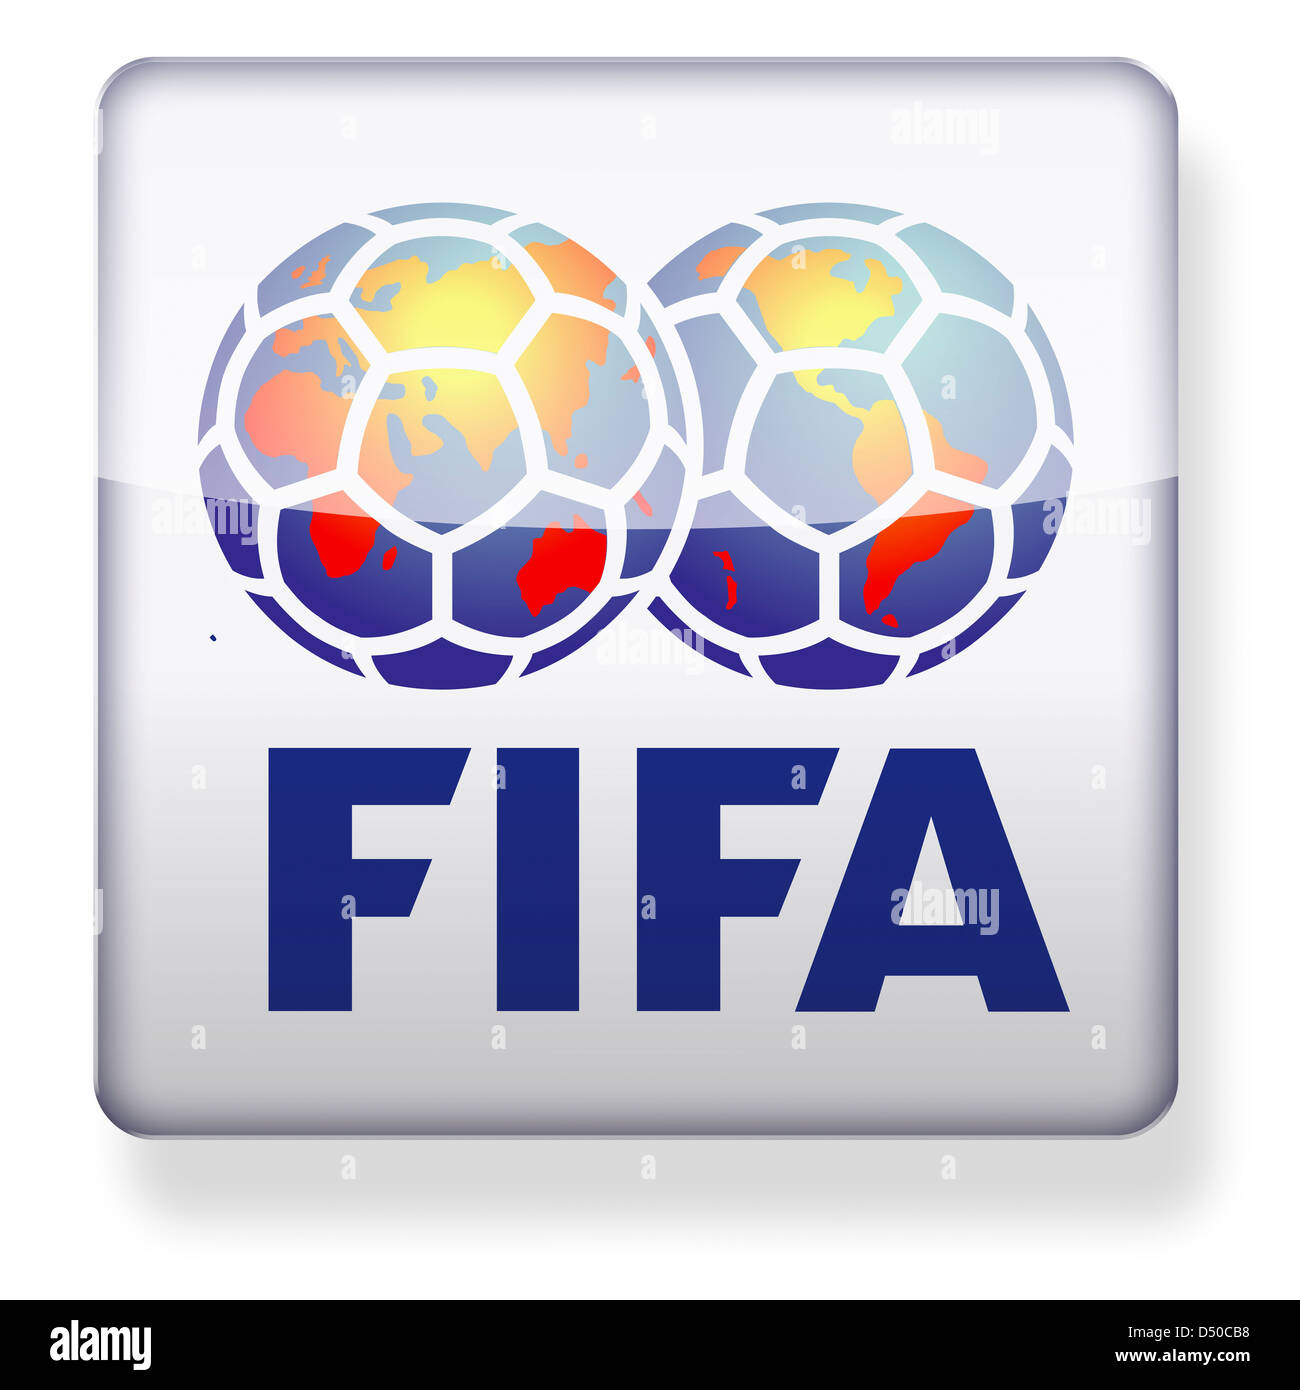 Logotipo de la Fifa como el icono de una aplicación. Trazado de recorte incluido. Foto de stock